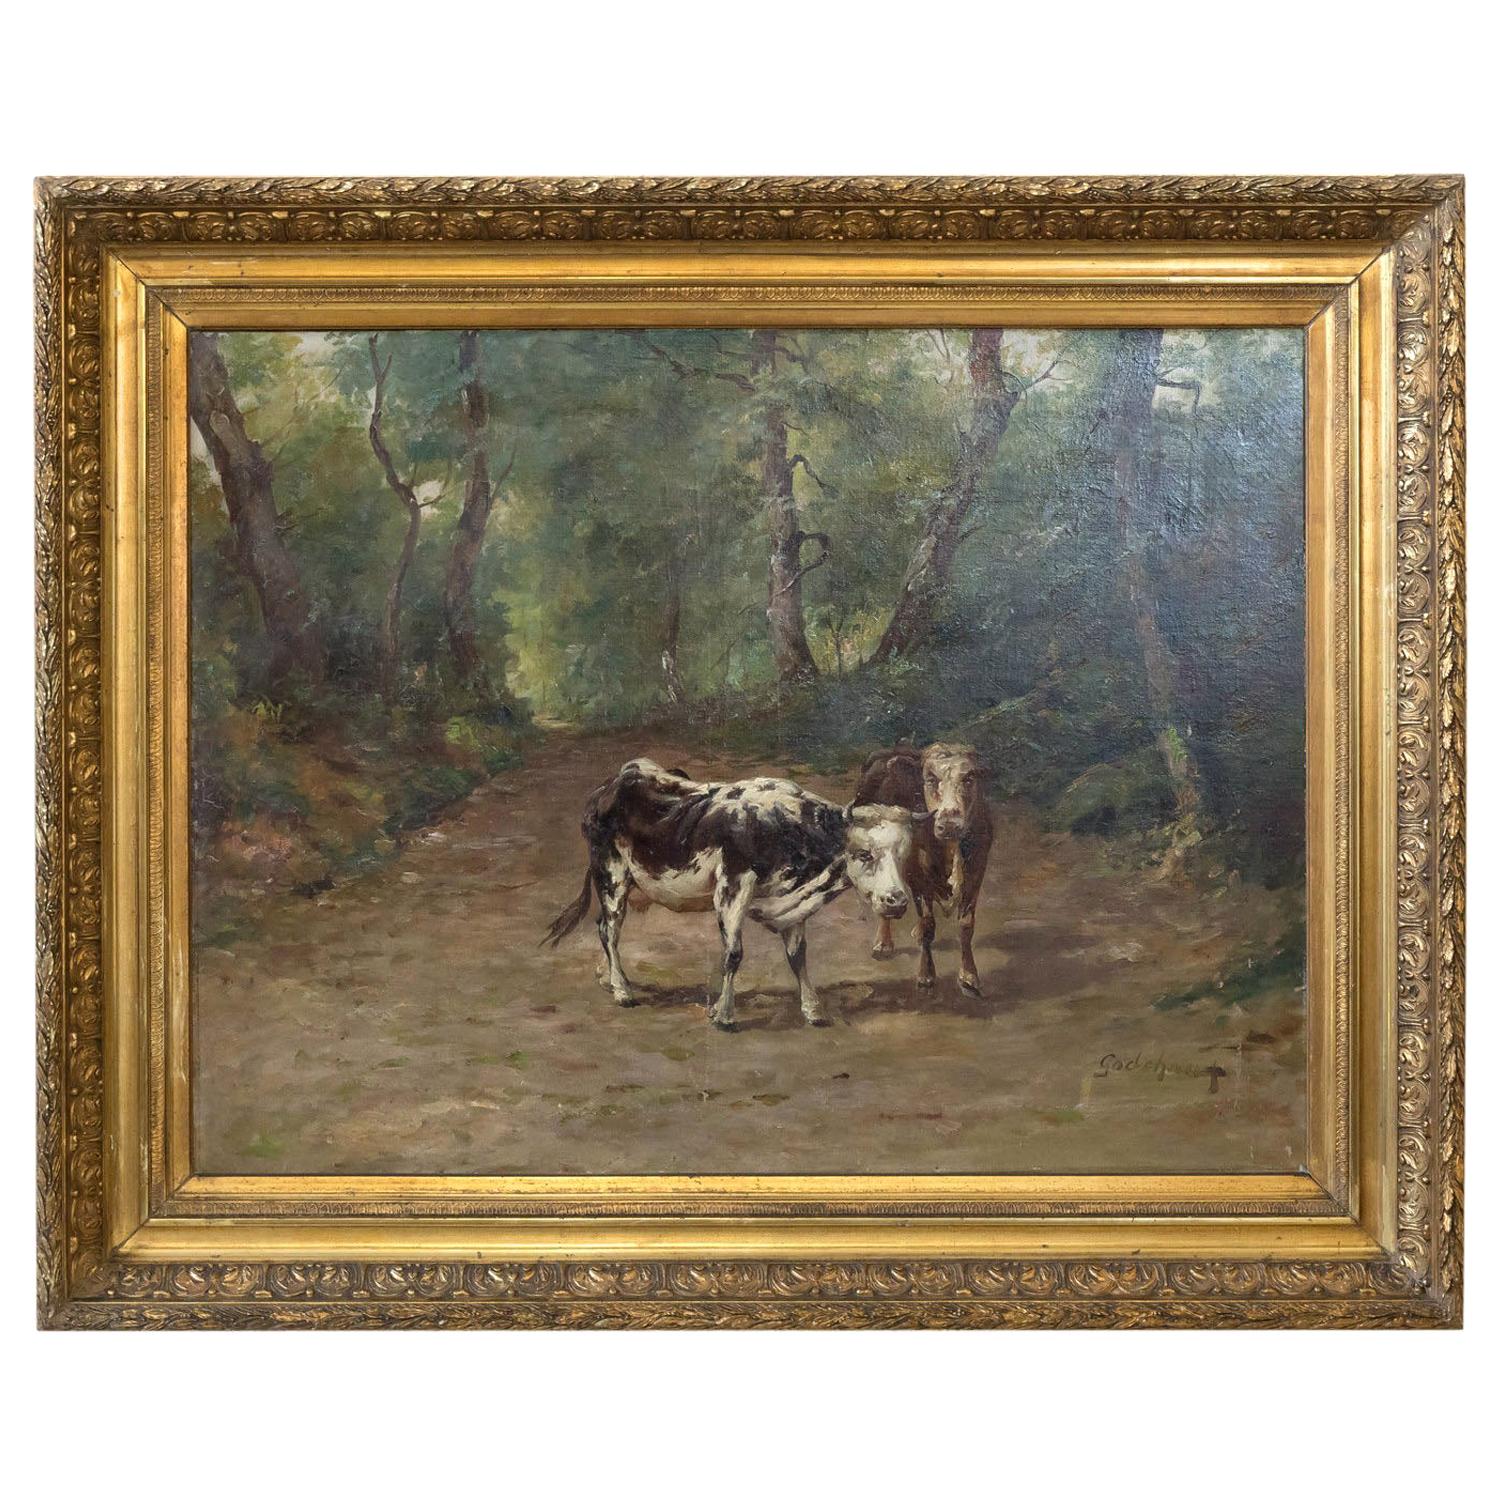 Cuadro francés del siglo XIX Vacas en un camino forestal, de Emile Godchaux, firmado